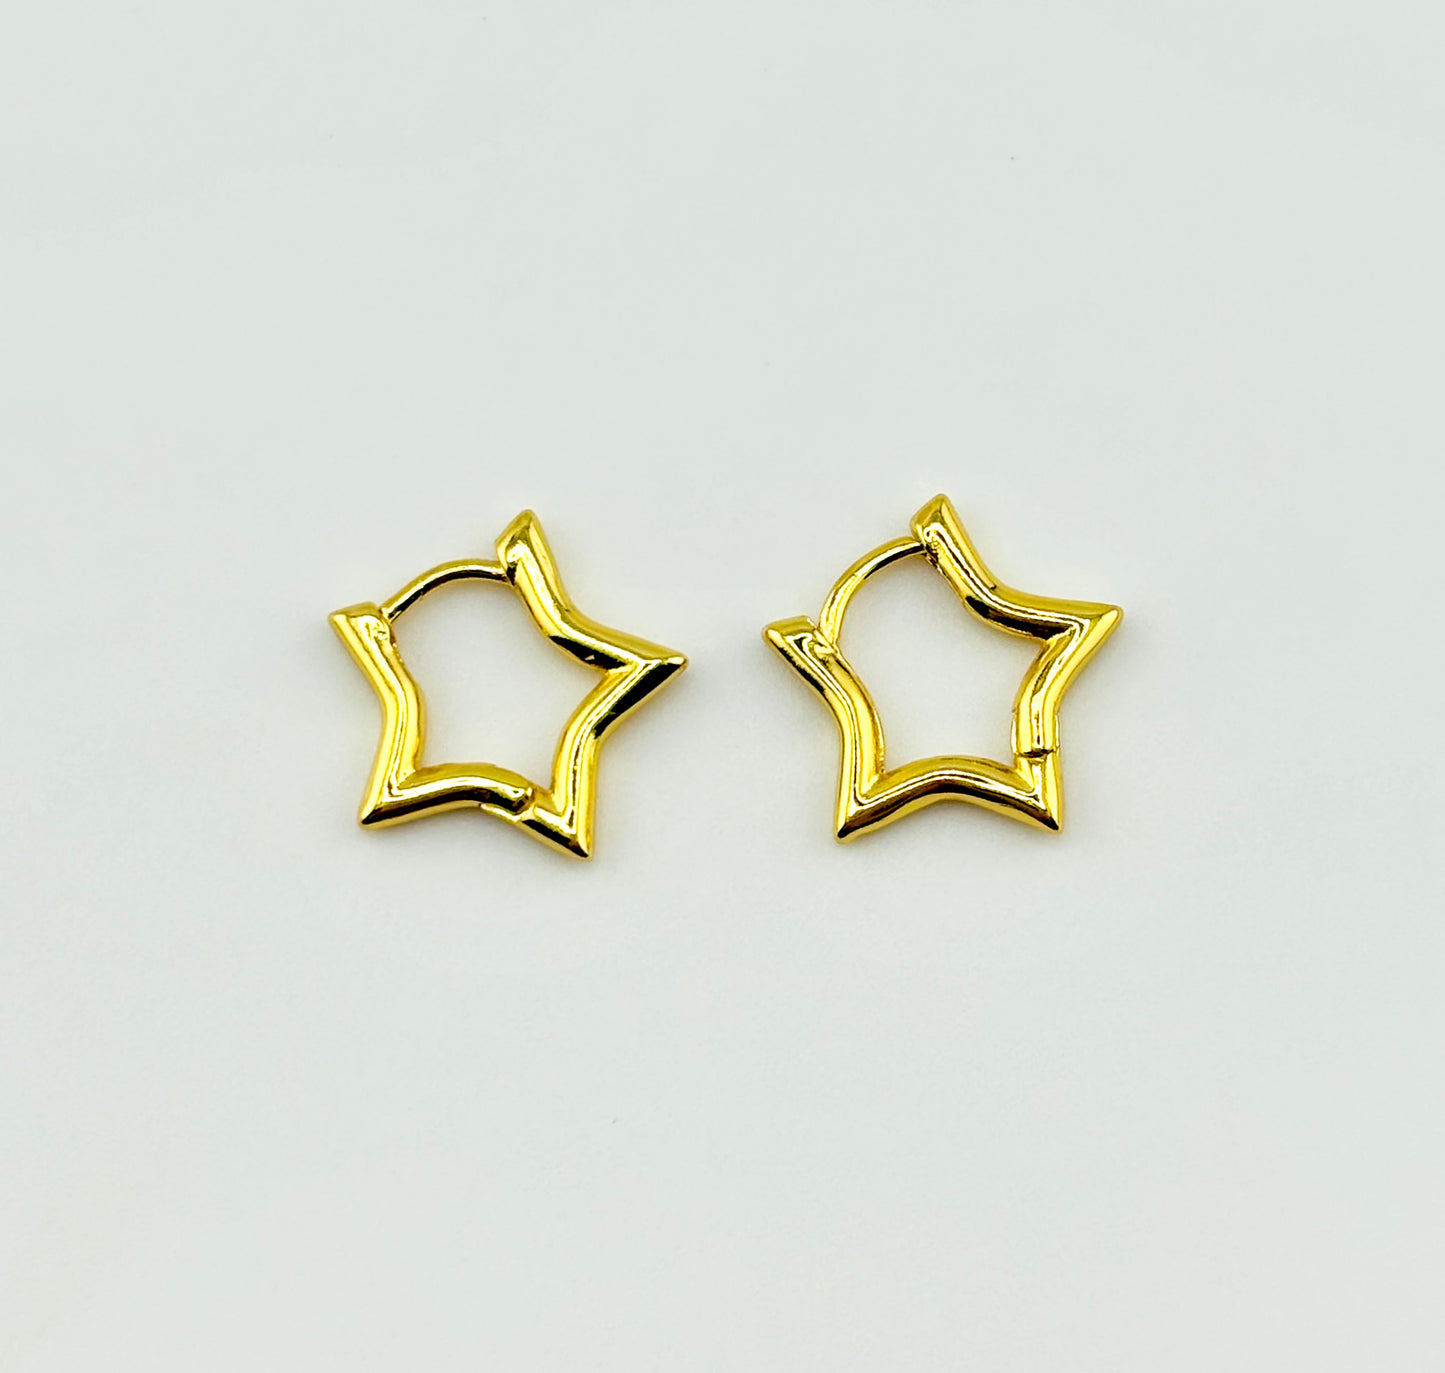 You shine Peruvian 18k gold filled earrings